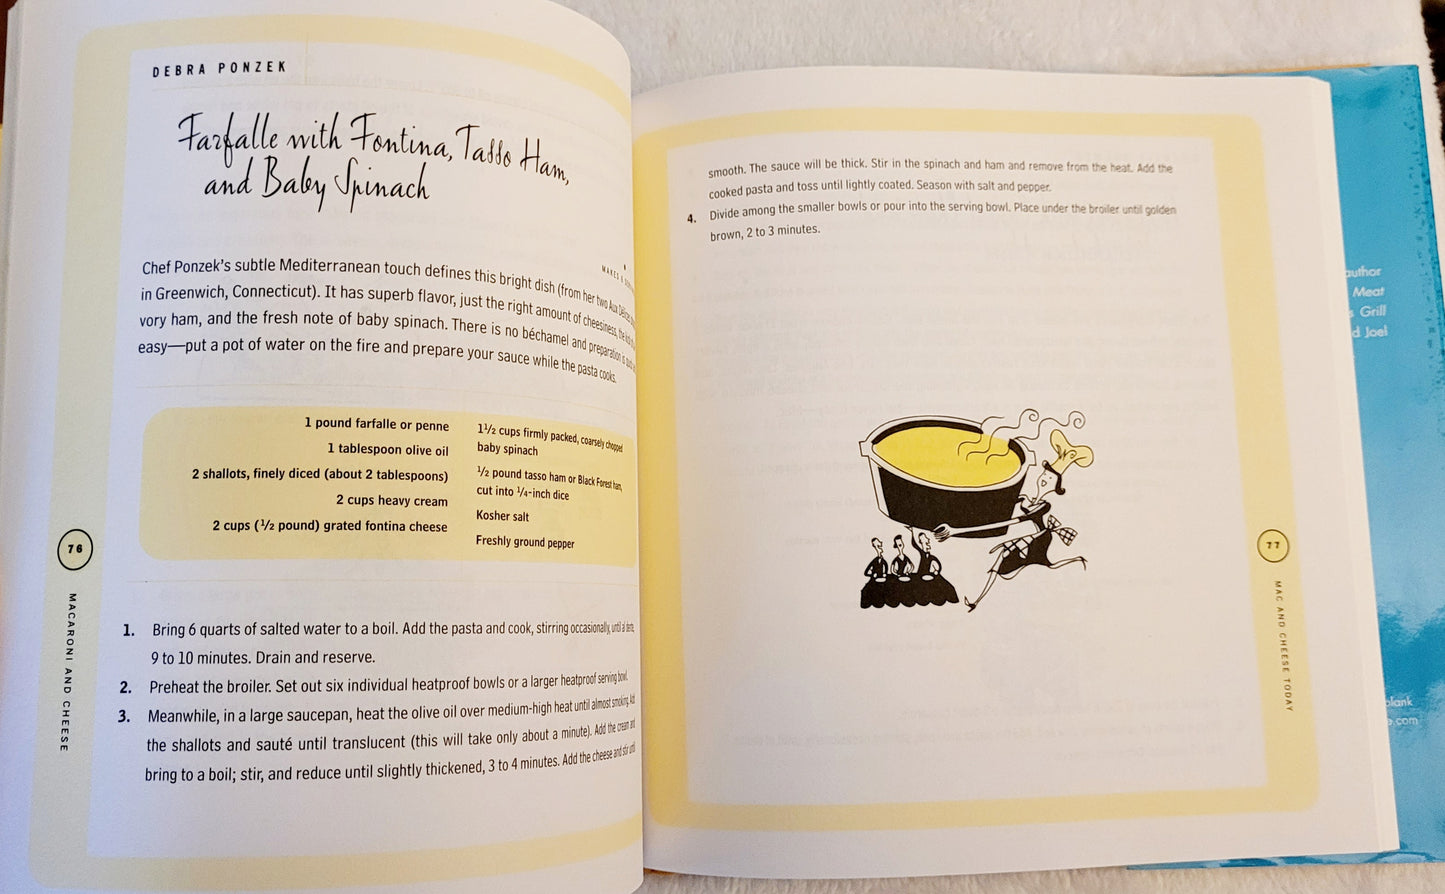 "MACARONI & CHEESE" Cookbook by Jean Schwartz